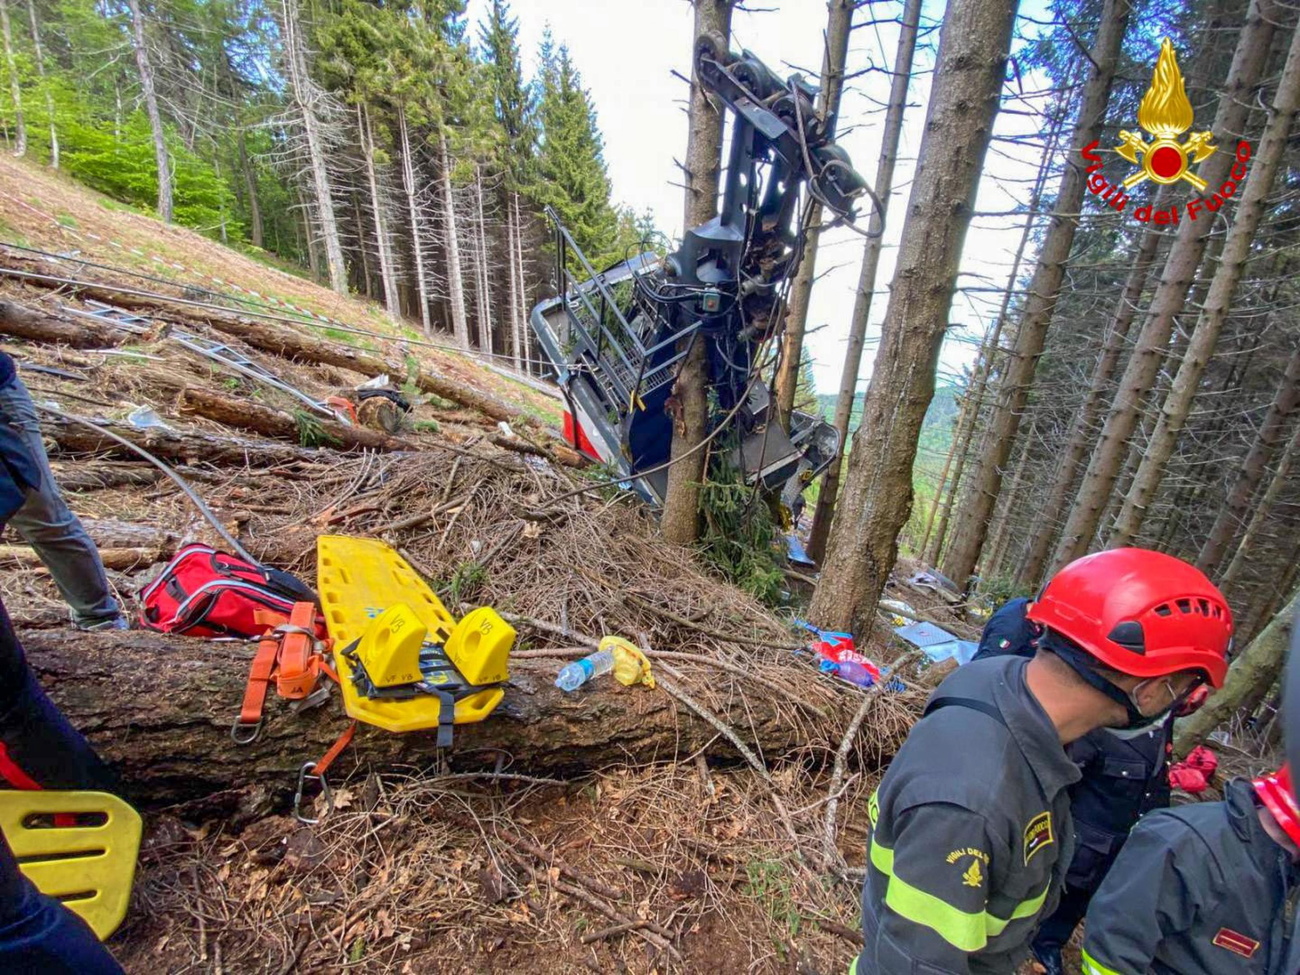 Il 23 maggio 2021, la caduta di una cabina dell’impianto a fune di Stresa provocò la morte di 14 persone.